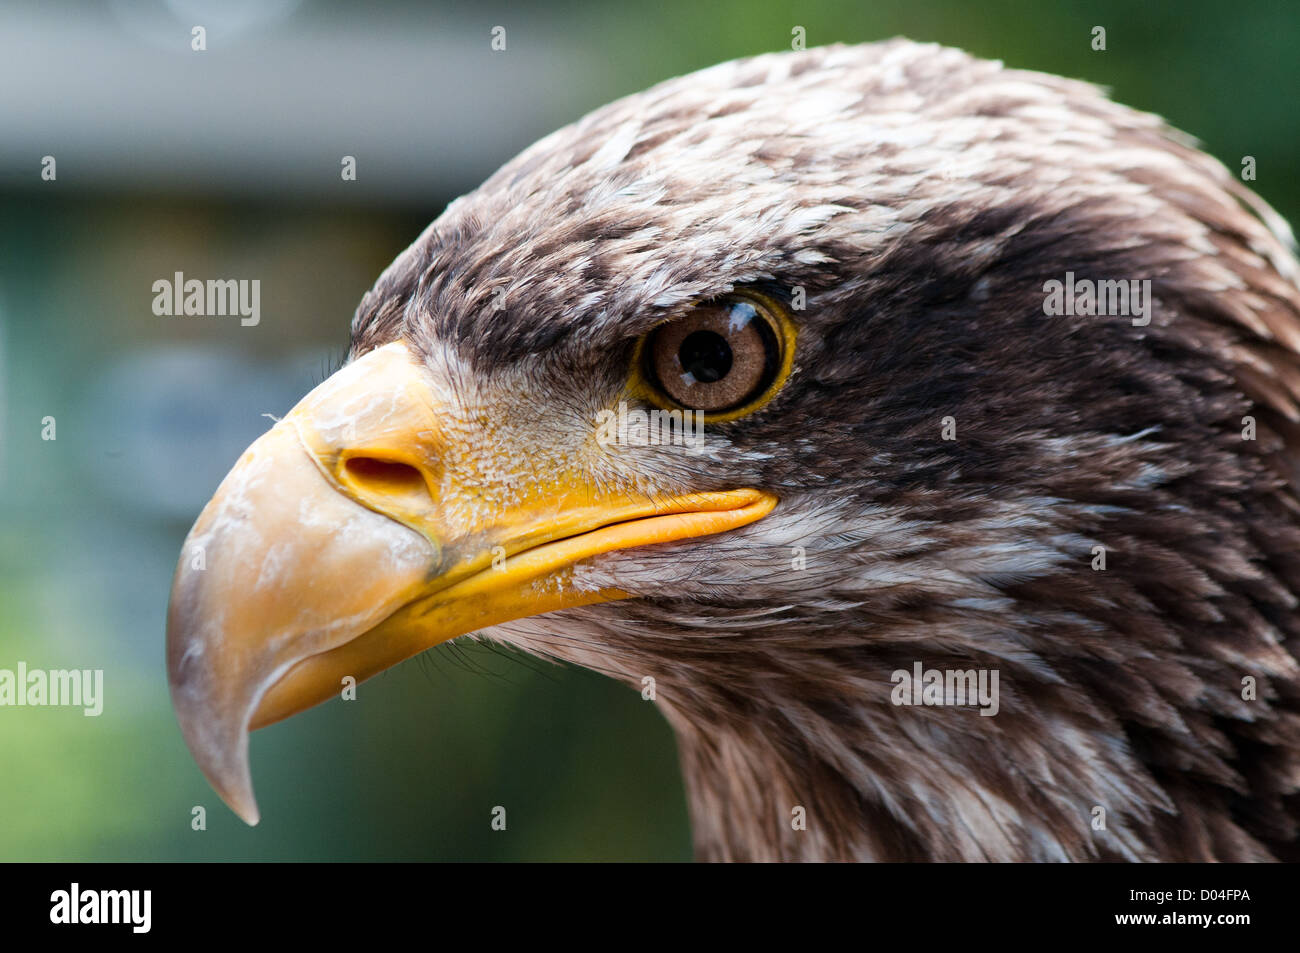 Imagen retrato del águila calva americana. Centrado en la imagen de la cara  del pájaro dando altos niveles de detalles en características clave  Fotografía de stock - Alamy